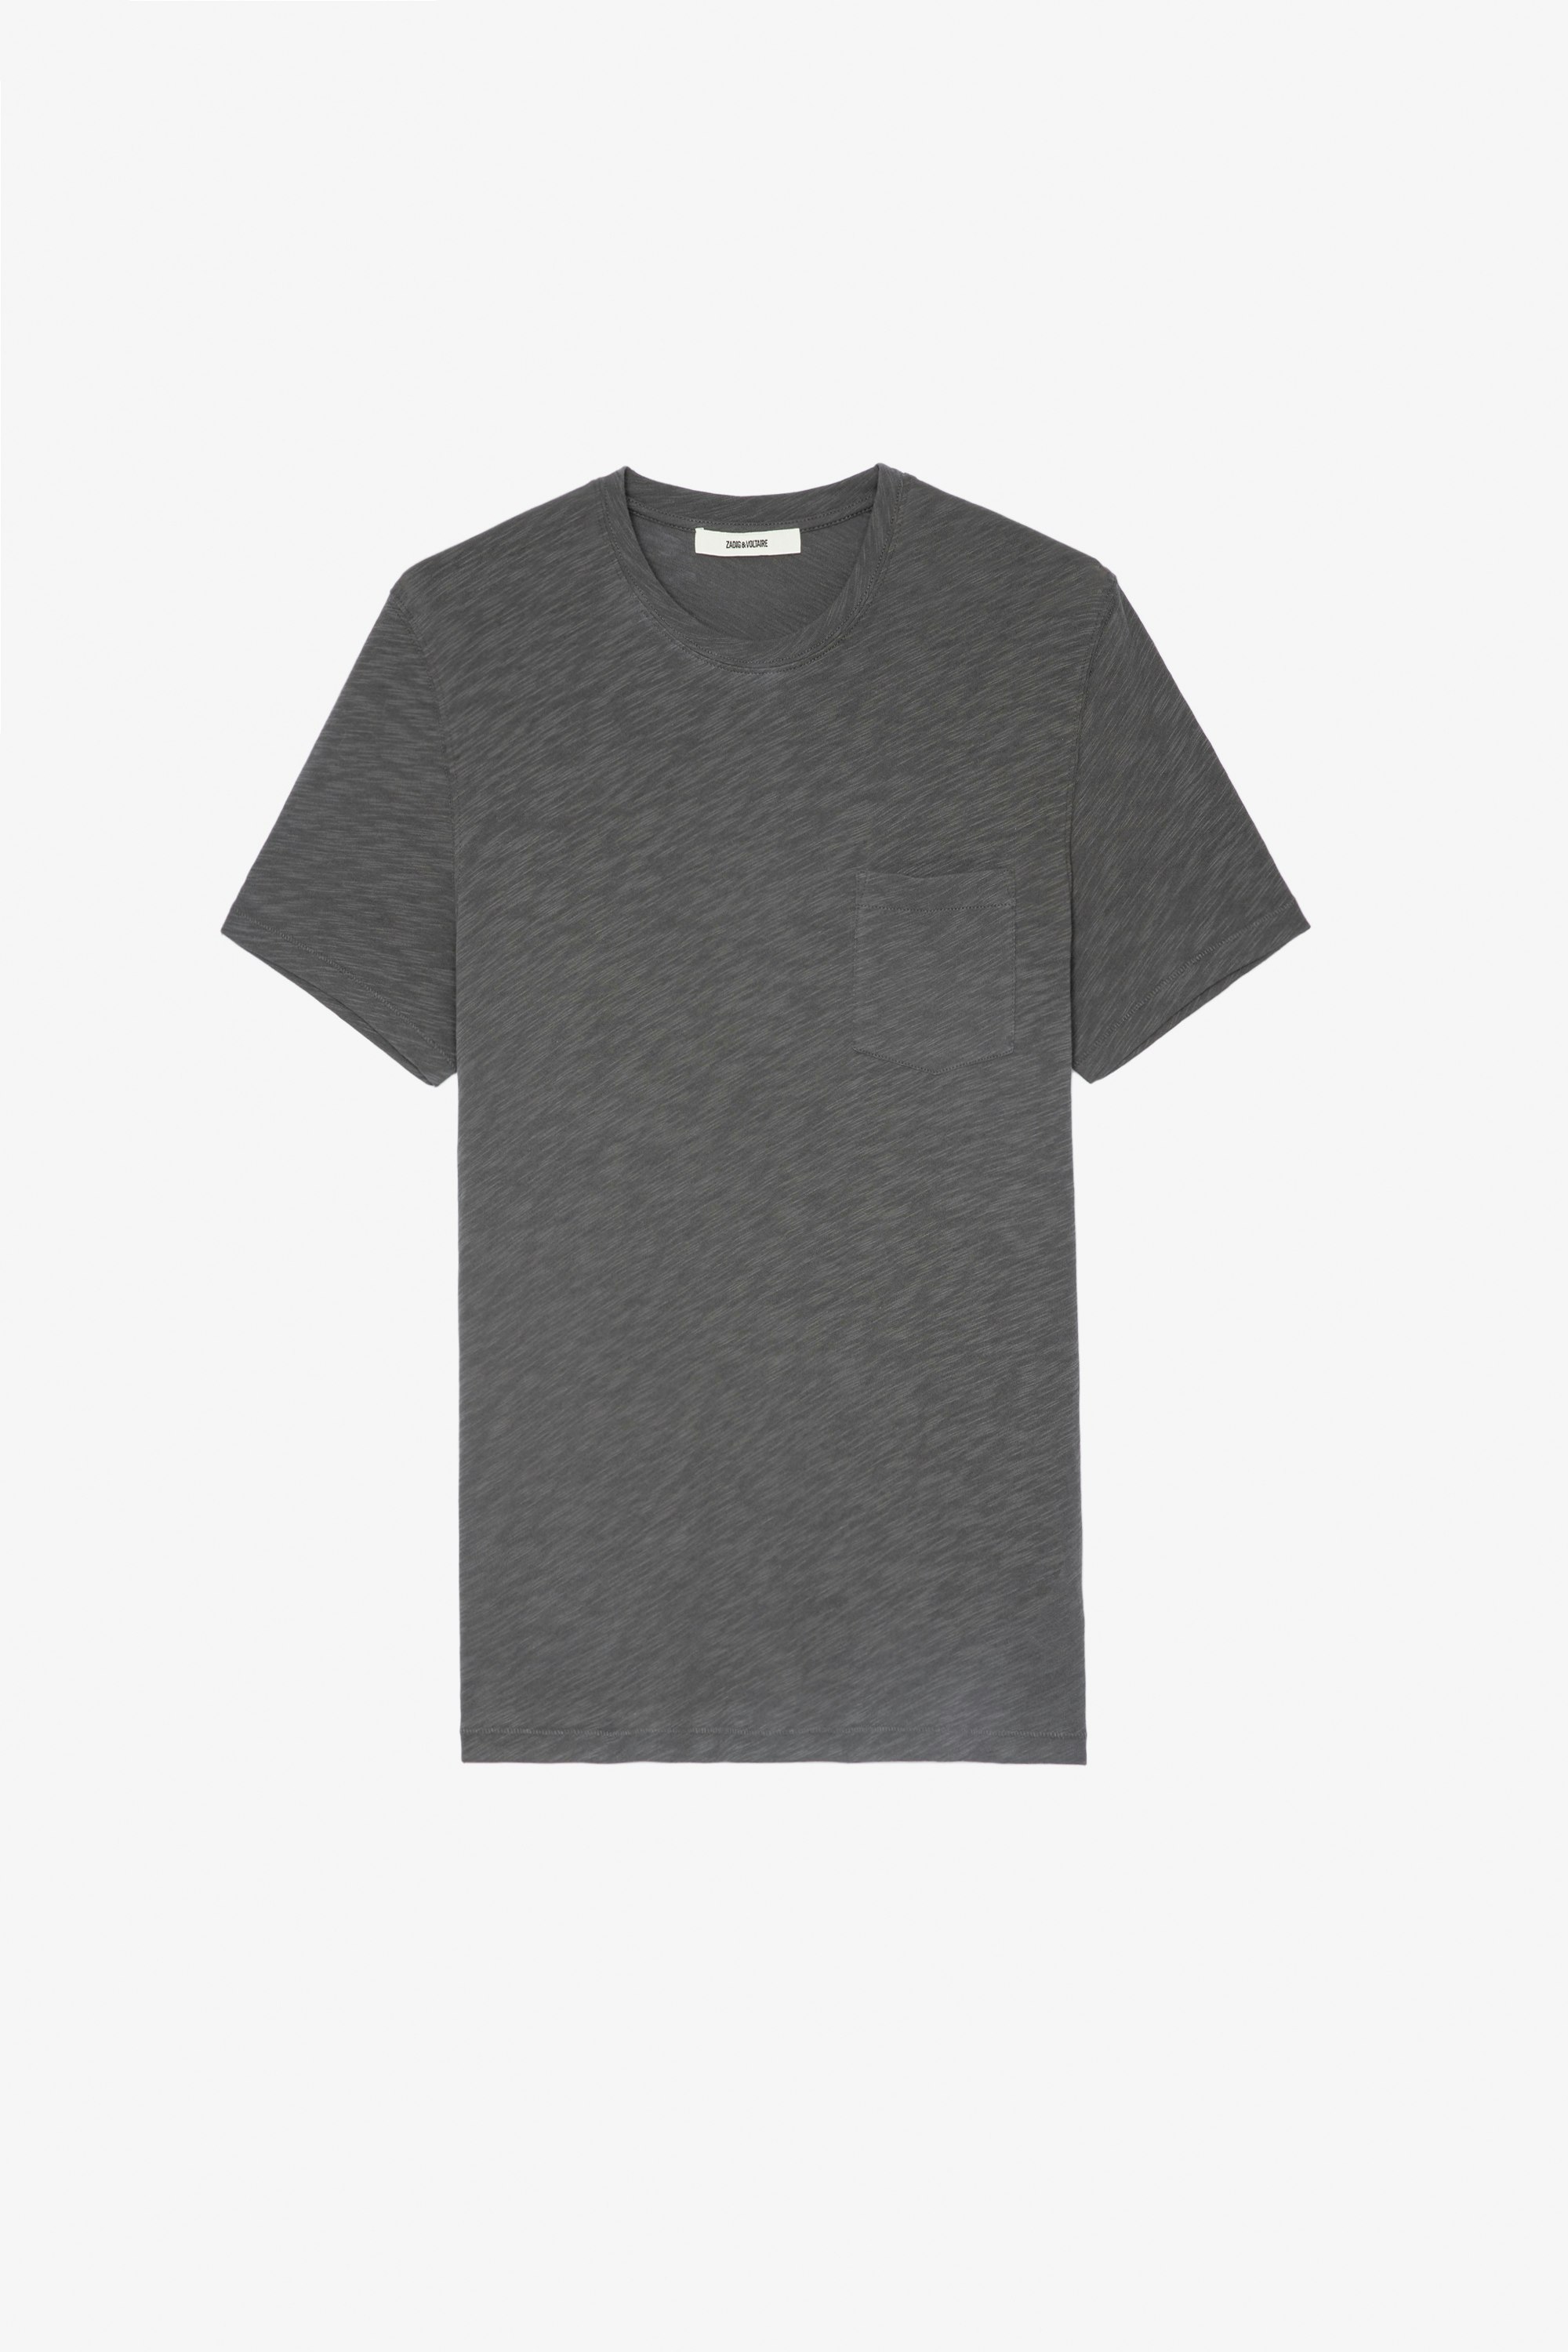 T-shirt Stockholm fiammato T-shirt in cotone fiammato grigio girocollo a maniche corte con stampa teschio sul retro - Uomo